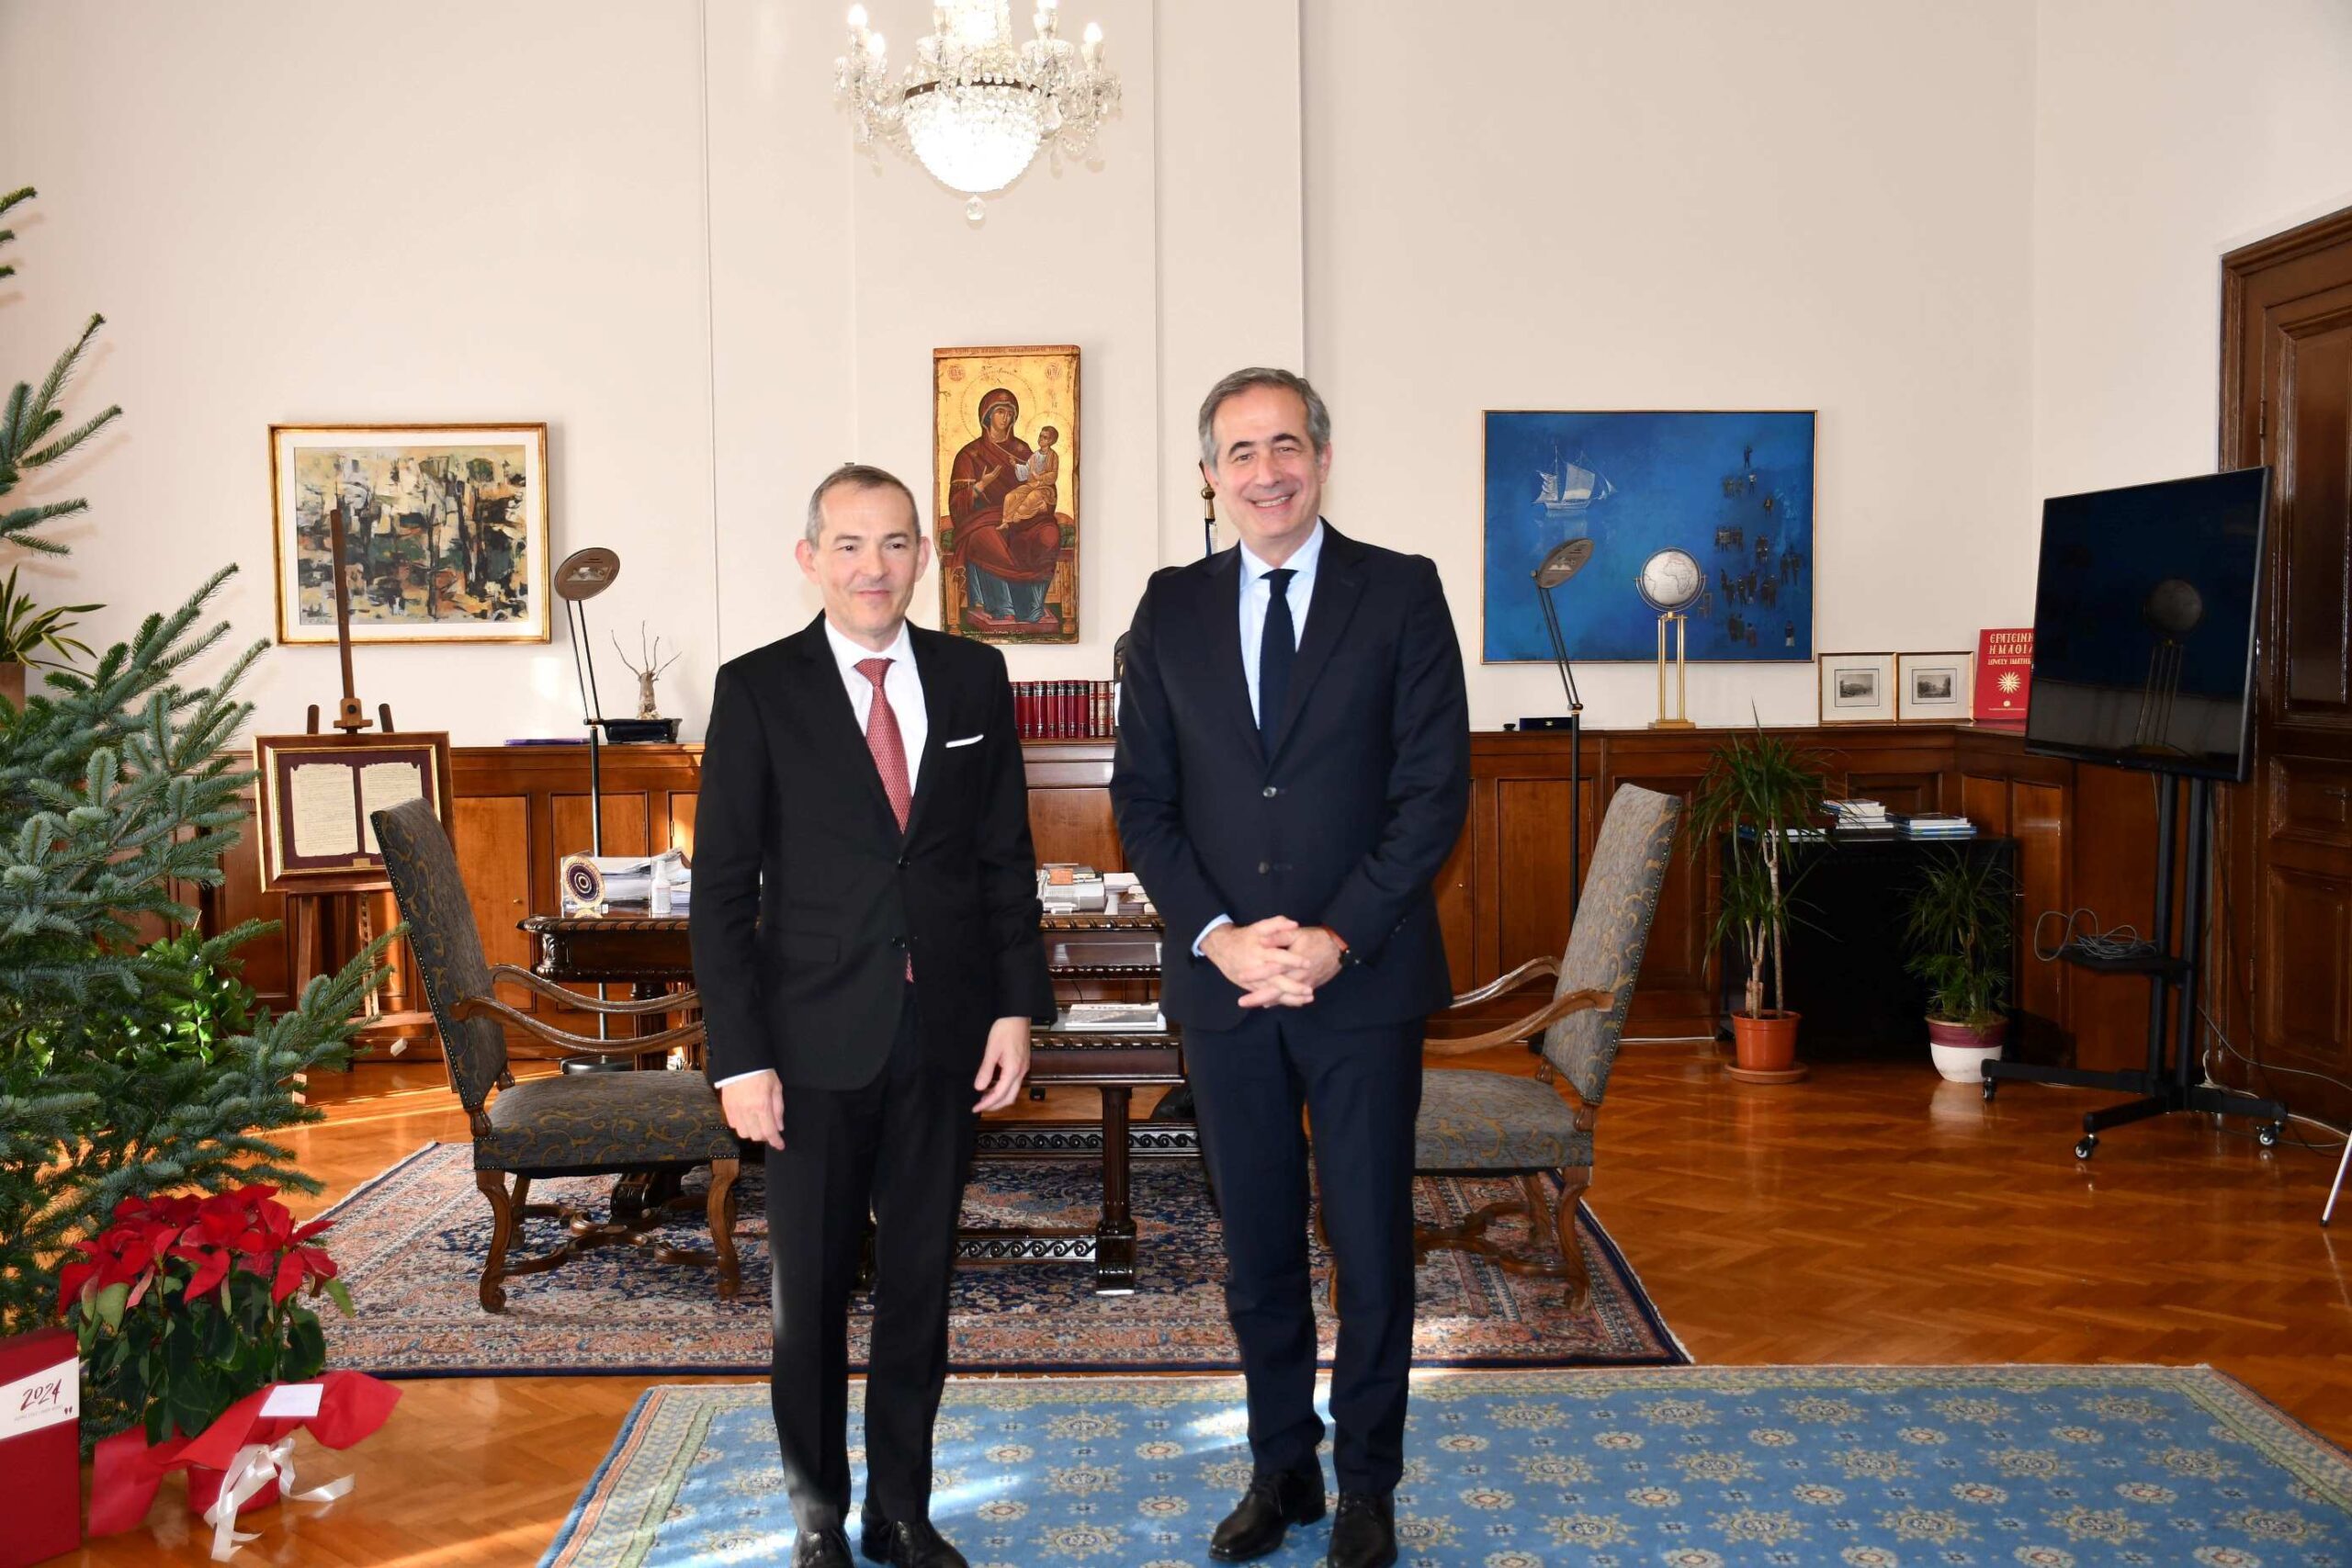 Θεσσαλονίκη: Συνάντηση του Υφυπουργού Μακεδονίας και Θράκης κ. Στάθη Κωνσταντινίδη με τον Γενικό Πρόξενο της Γαλλίας κ. Jean Luc Lavaud